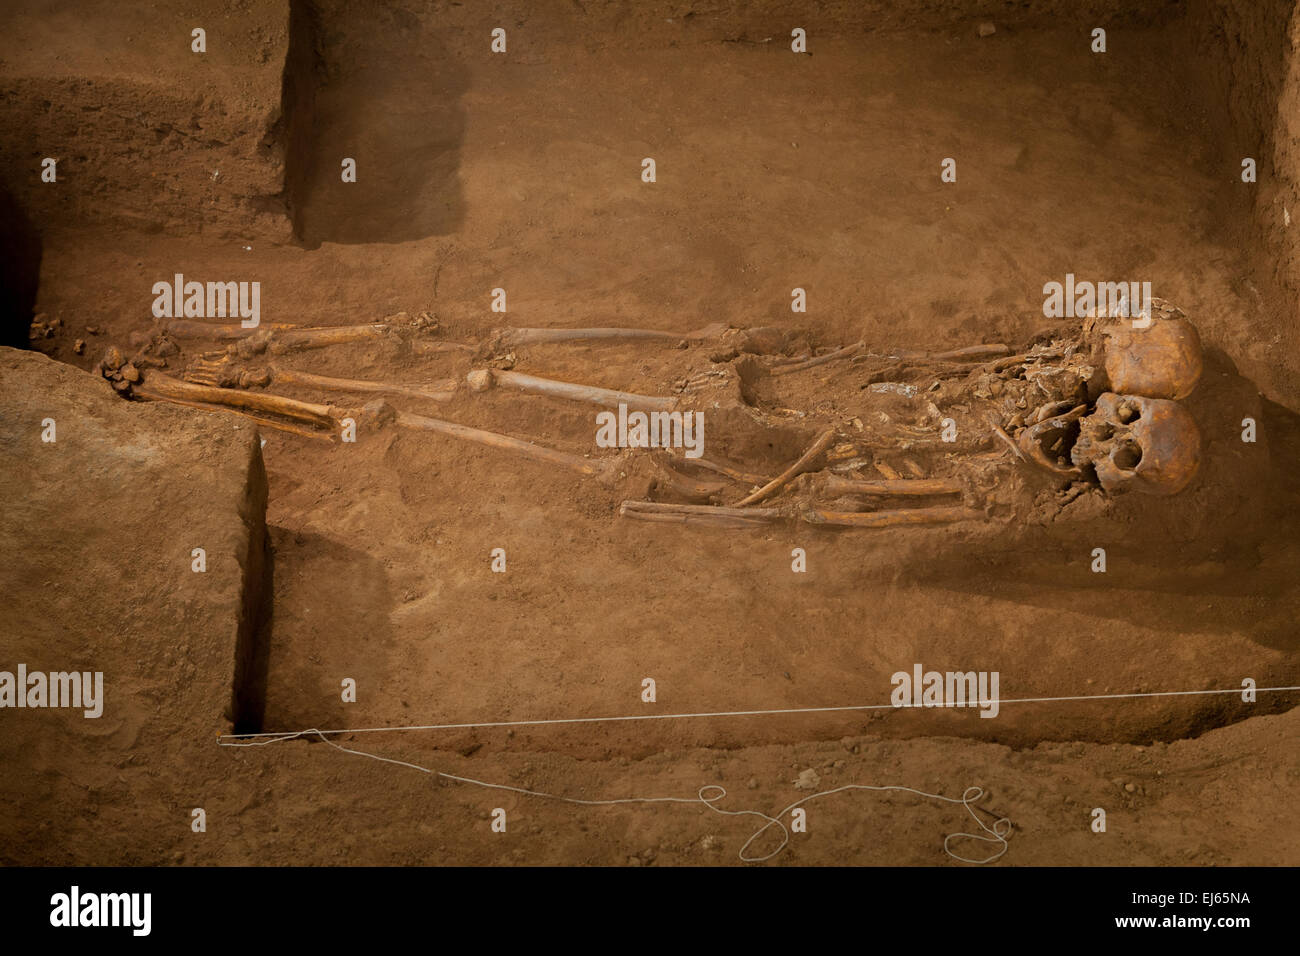 Prähistorische mongoloide Skelette in Gua Harimau (wörtlich: tigerhöhle), einer archäologischen Stätte in Padangbindu, Südsumatra, Indonesien. Stockfoto